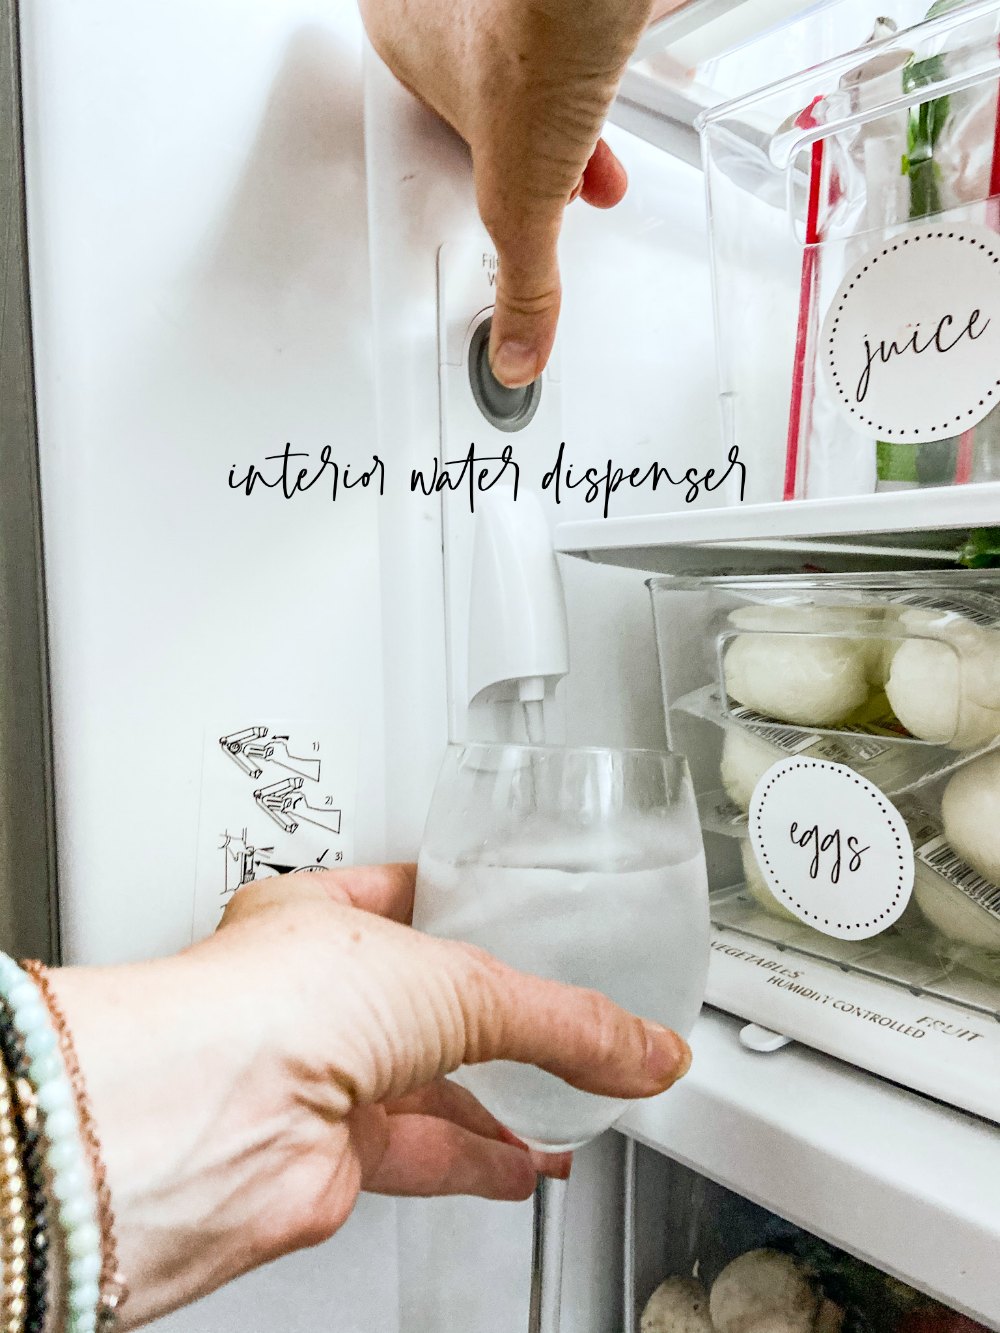 INterior water dispenser leaves the outside of the fridge seamless 